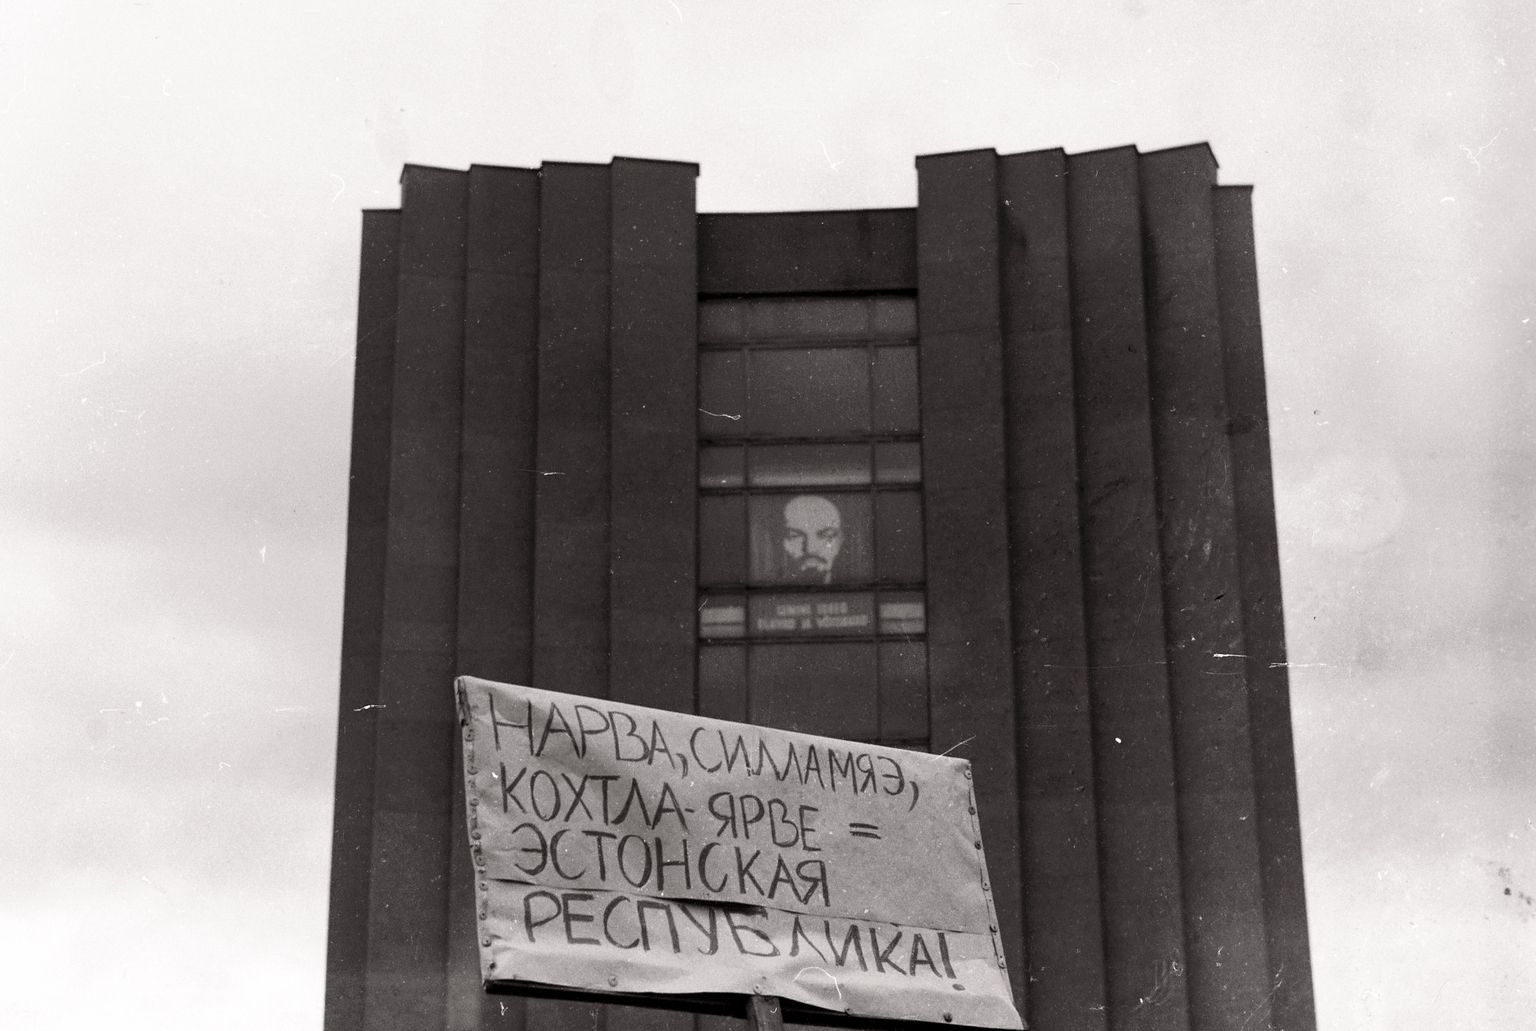 26 мая 1990 года в Кохтла-Ярве провели Первый съезд народных депутатов в защиту единства Советской Федерации, на котором попытались создать в Эстонии альтернативные промосковски настроенные органы власти, оказавшиеся, однако, недееспособными.